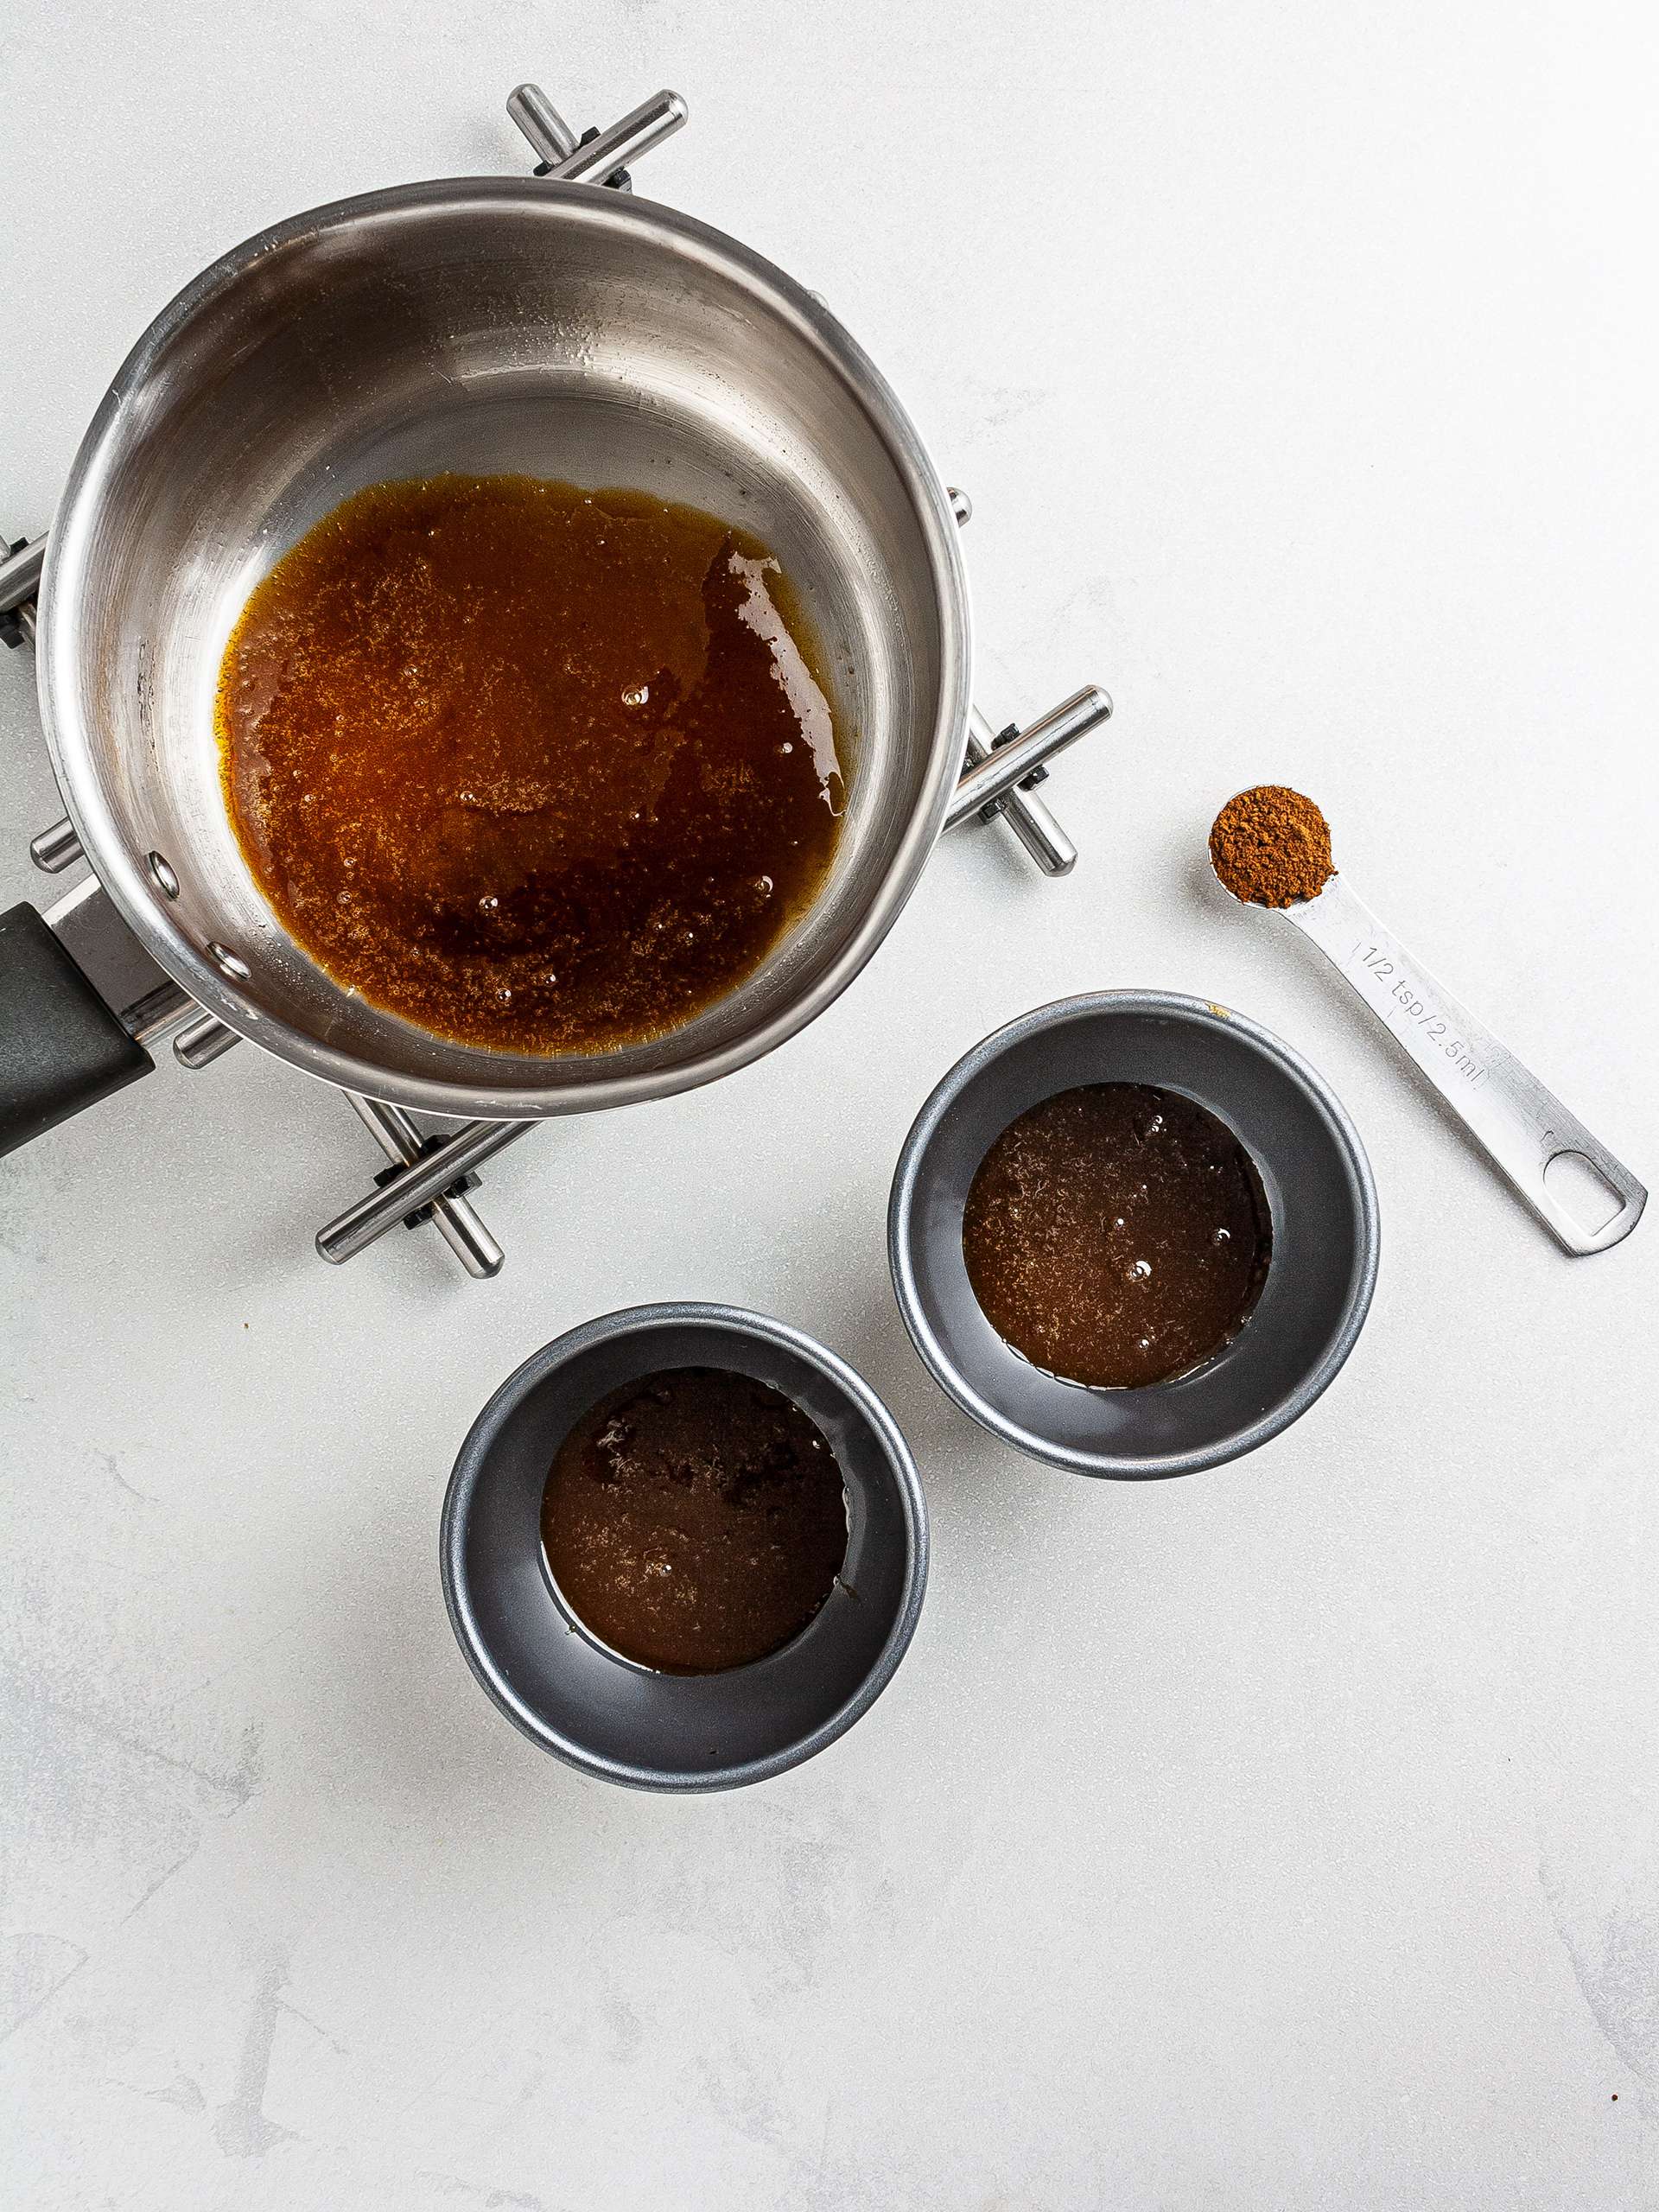 Coffee caramel in ramekins